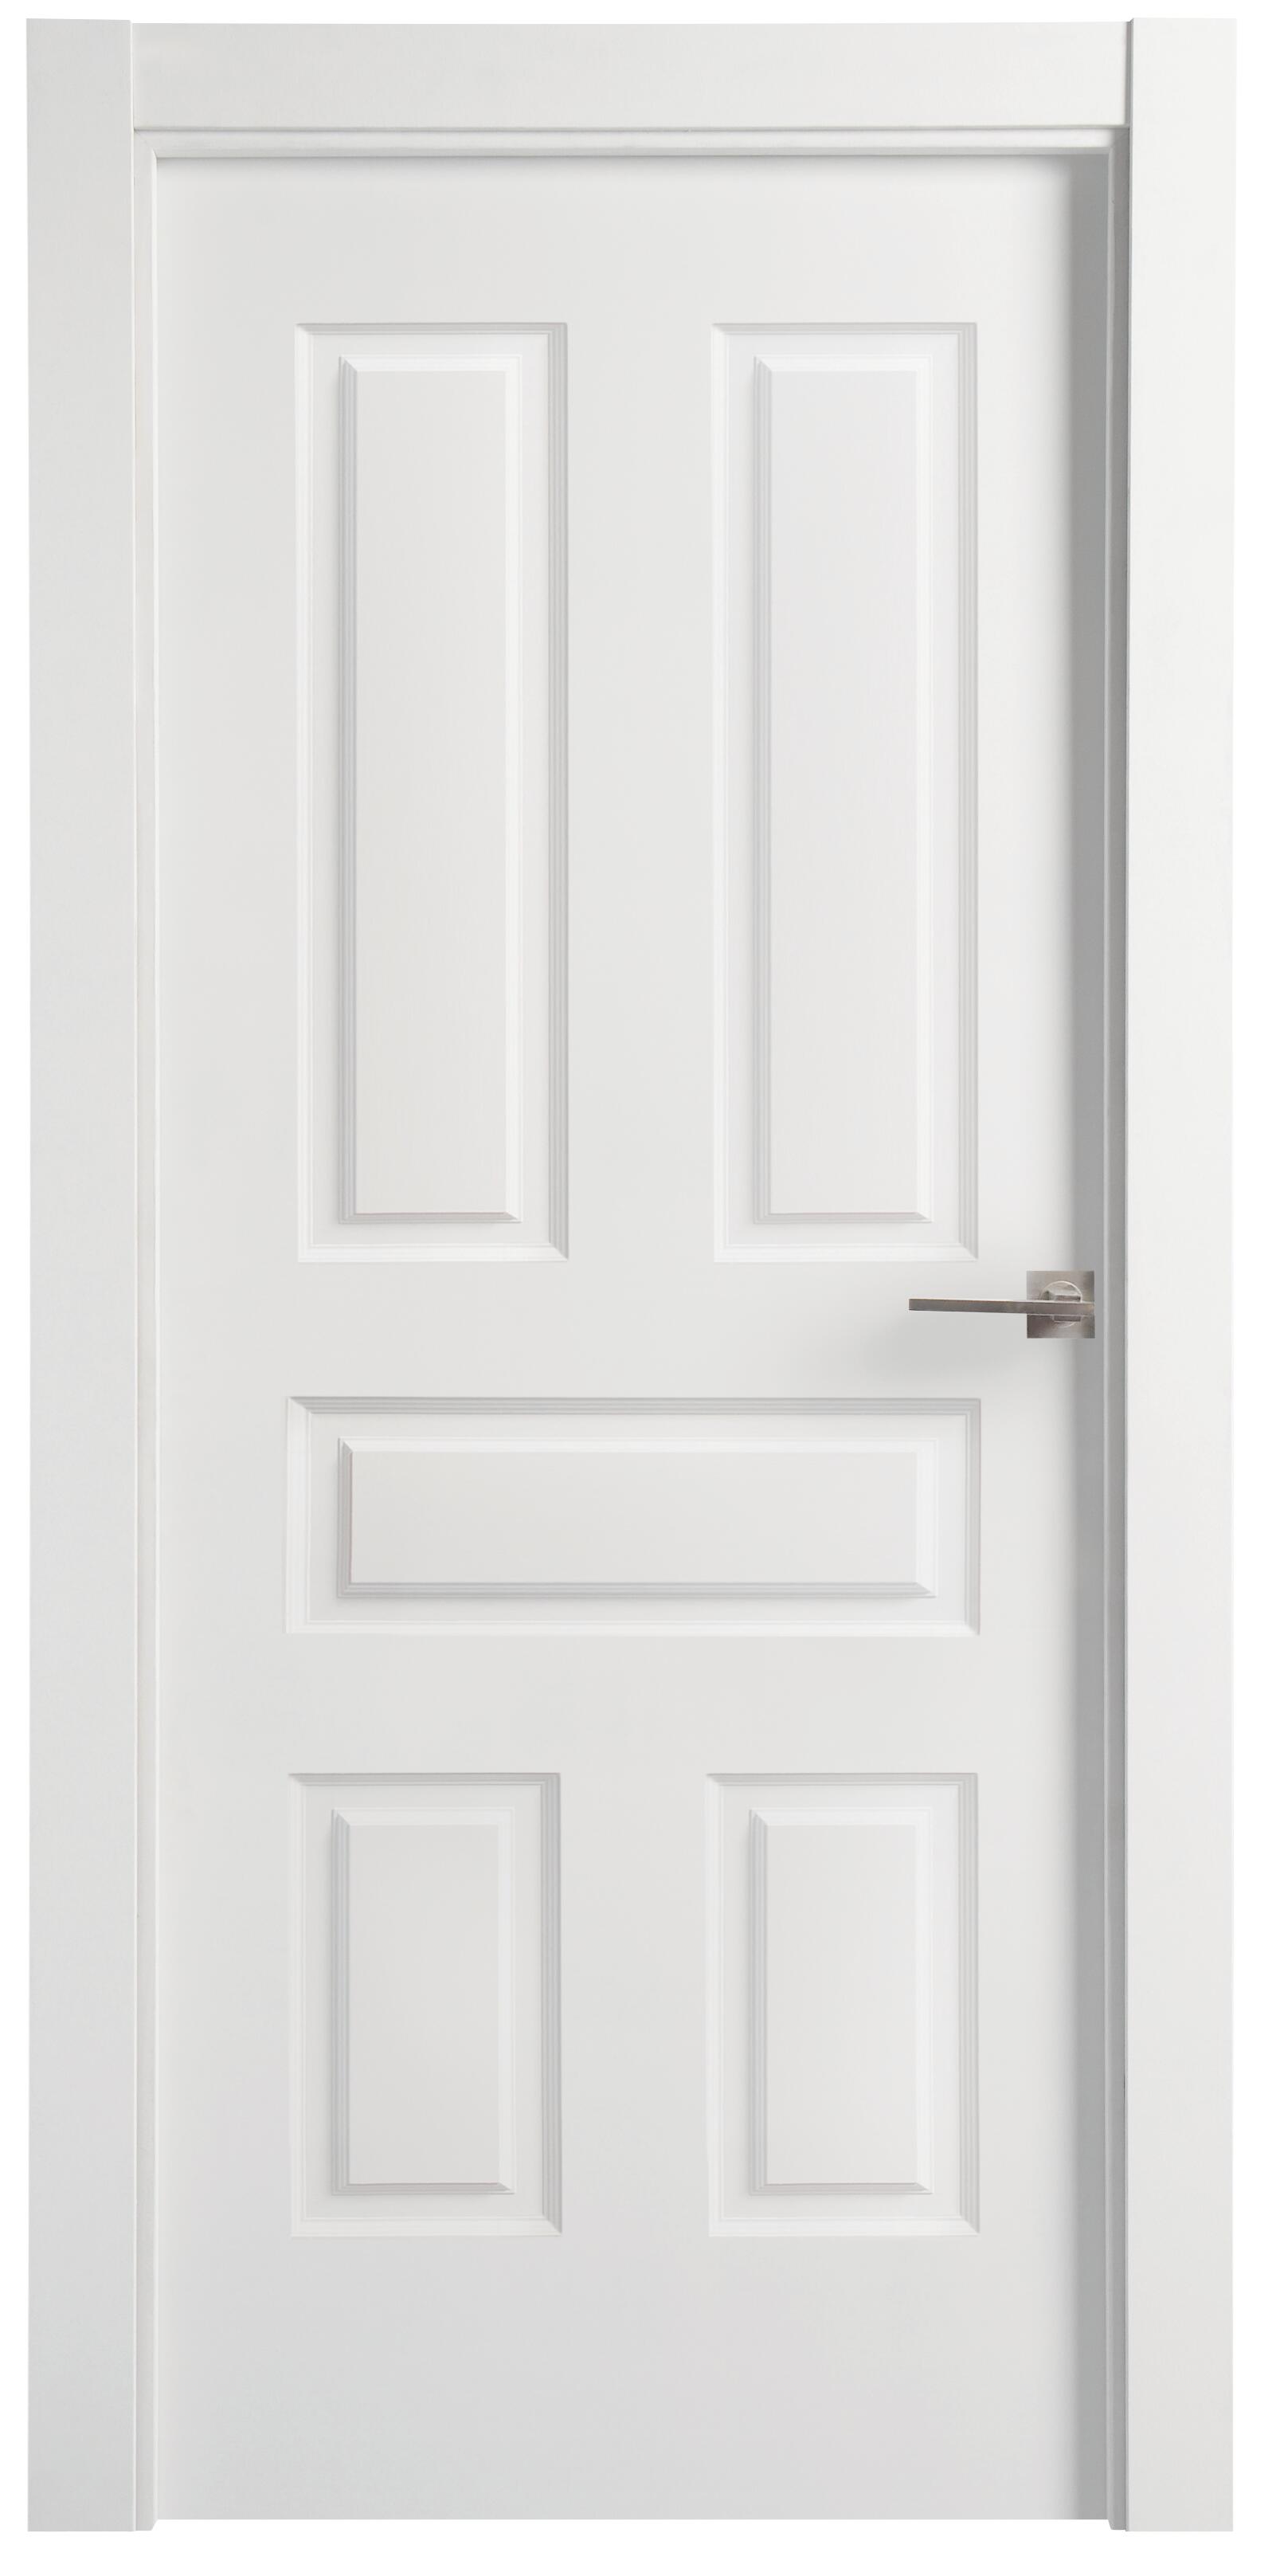 Puerta indiana plus blanco apertura izquierda de 9x92,5cm